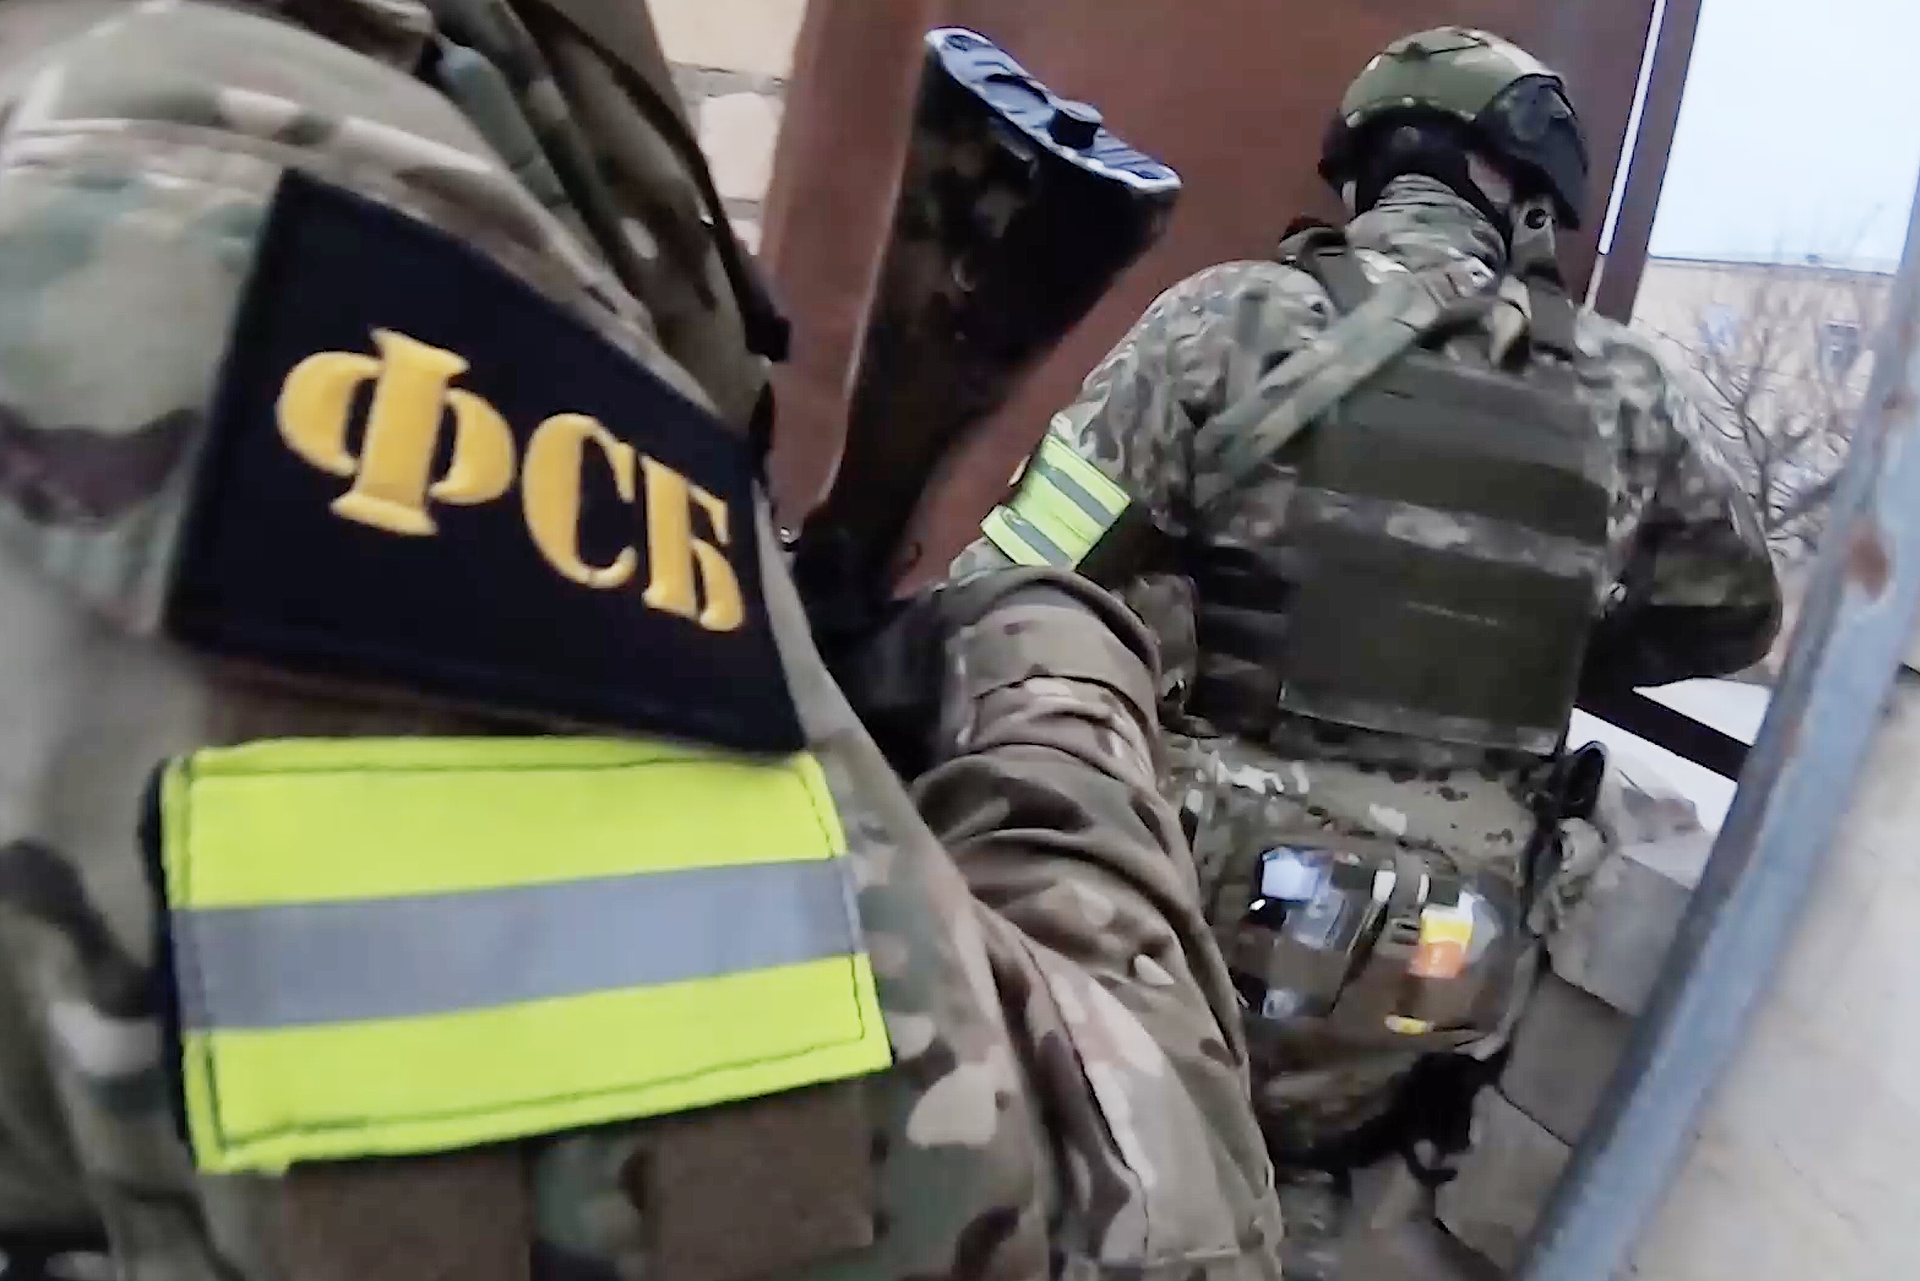 УФСБ: В Приморье задержан местный житель за шпионаж в пользу ГУР Украины